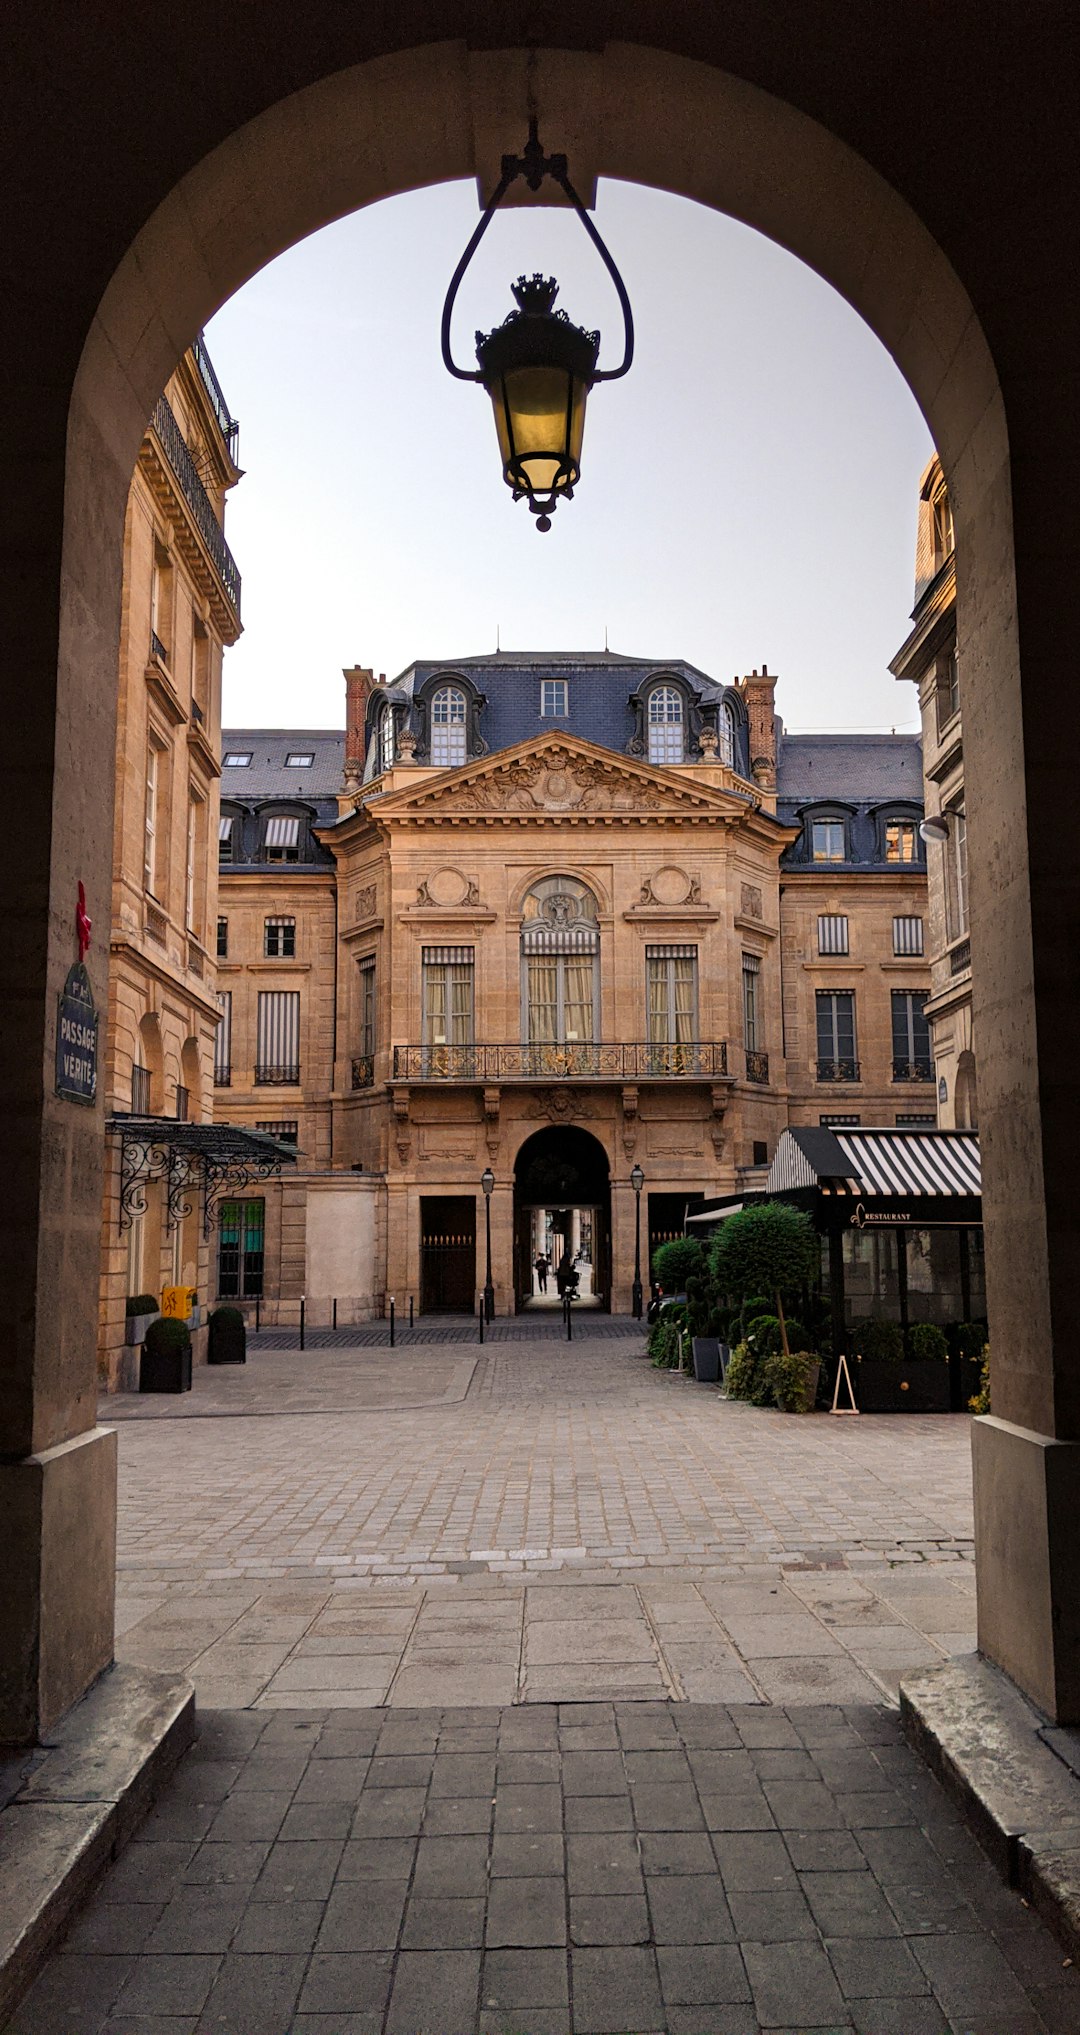 Town photo spot 1 Galerie des Proues Place Saint-Michel